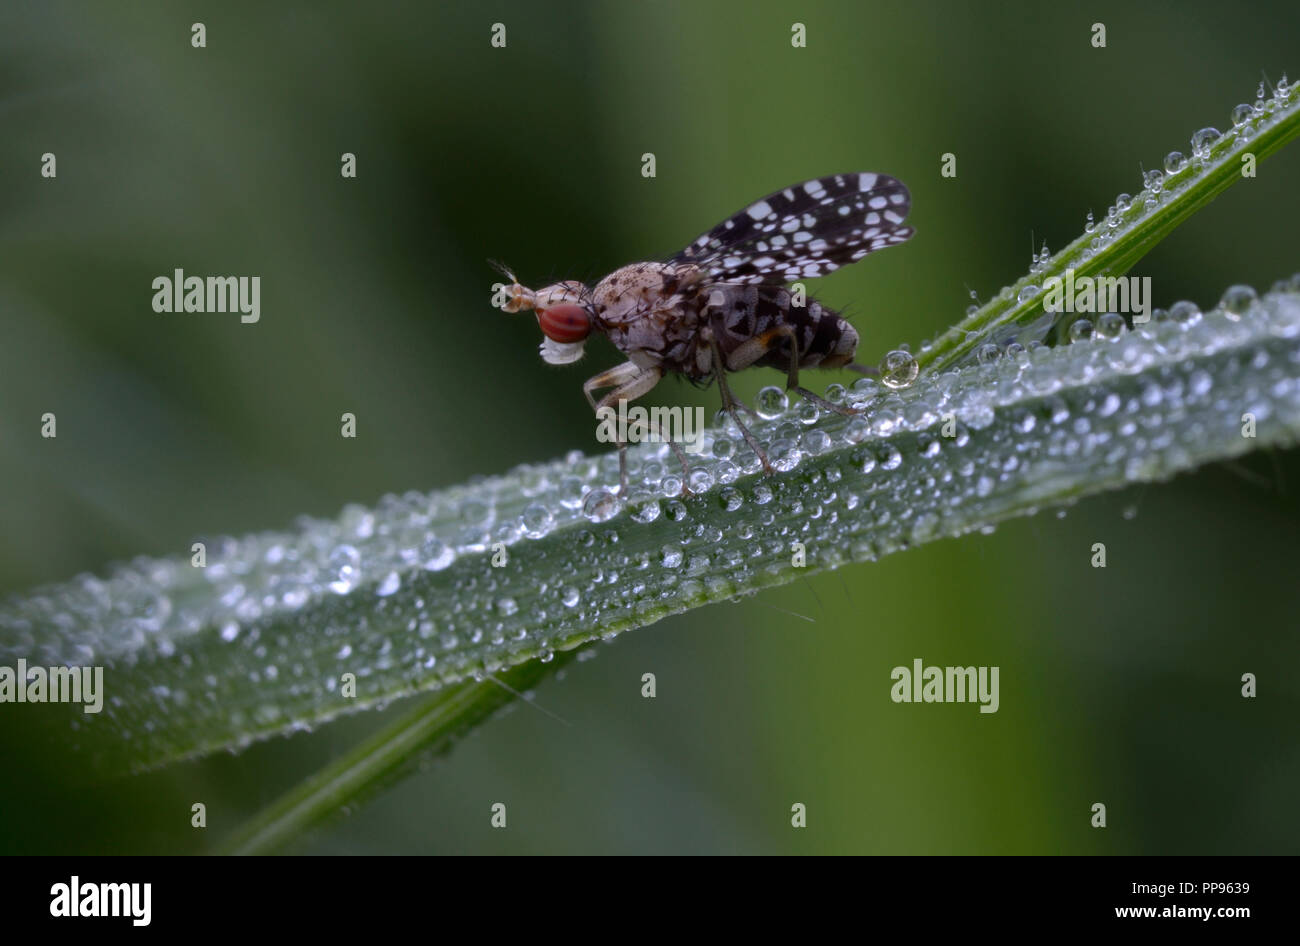 Petit fruit fly, Drosophilidae, assis sur une tige d'herbe humides de rosée devant un arrière-plan flou. Lugi, des Carpates, l'Ukraine, juin, 2018 Banque D'Images